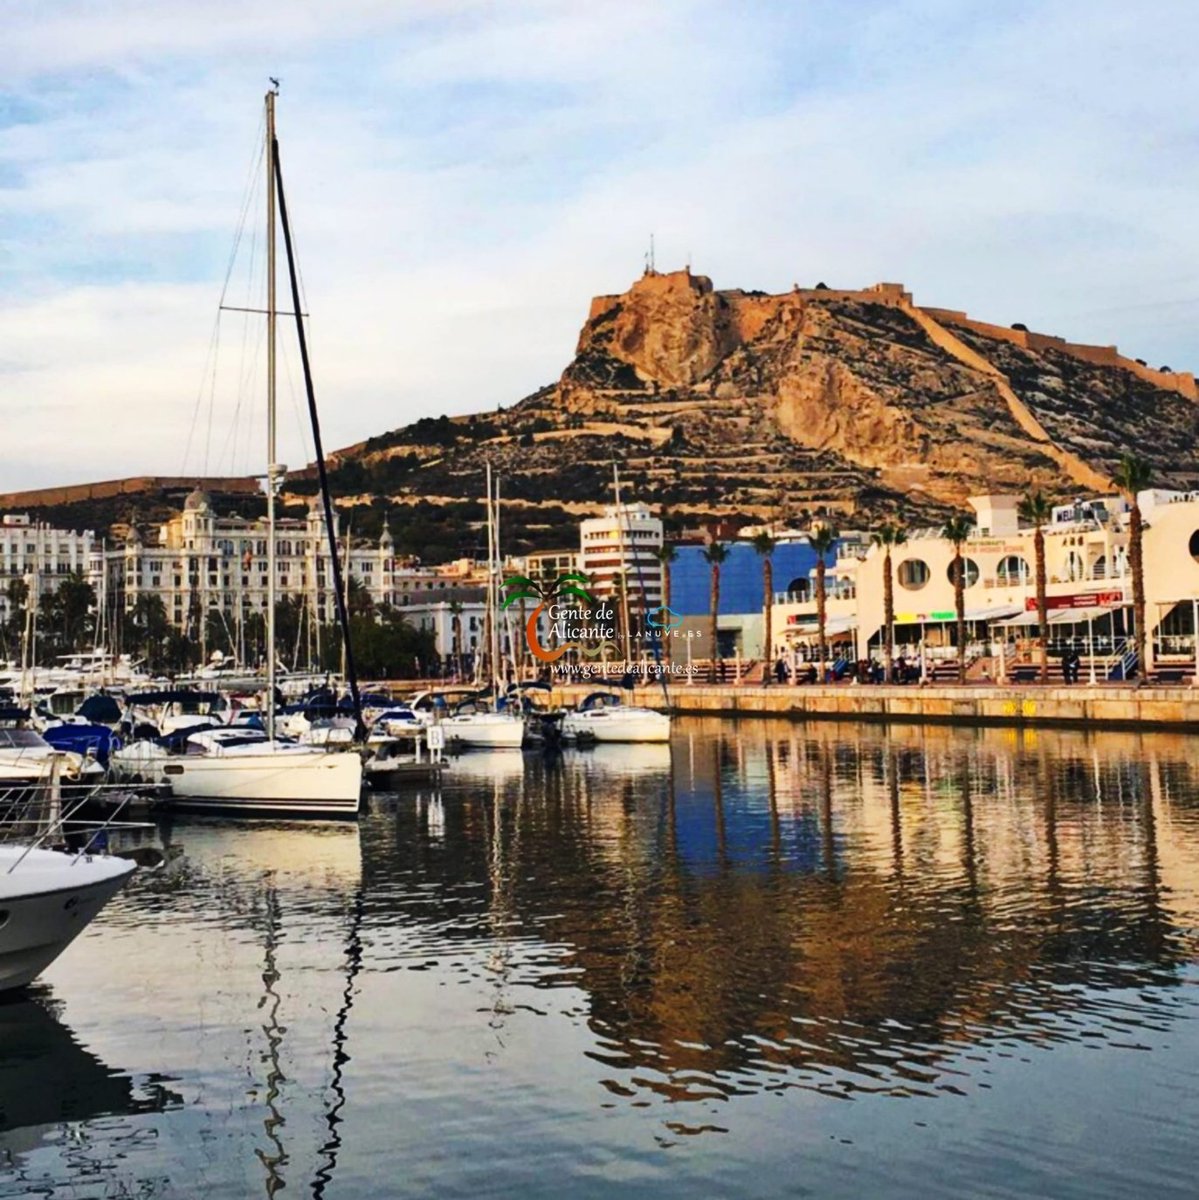 Buenas noches #GentedeAlicante 😍🌴🏰⚓⛵ nos despedimos por hoy con ésta bonita imagen desde el puerto con vistas al Castillo Santa Bárbara con las que os deseamos un magnífico descanso y una Bona Nit Familia!🥰

#Alicante #LaMillorTerretadelMón #España #CostaBlanca #lanuvees